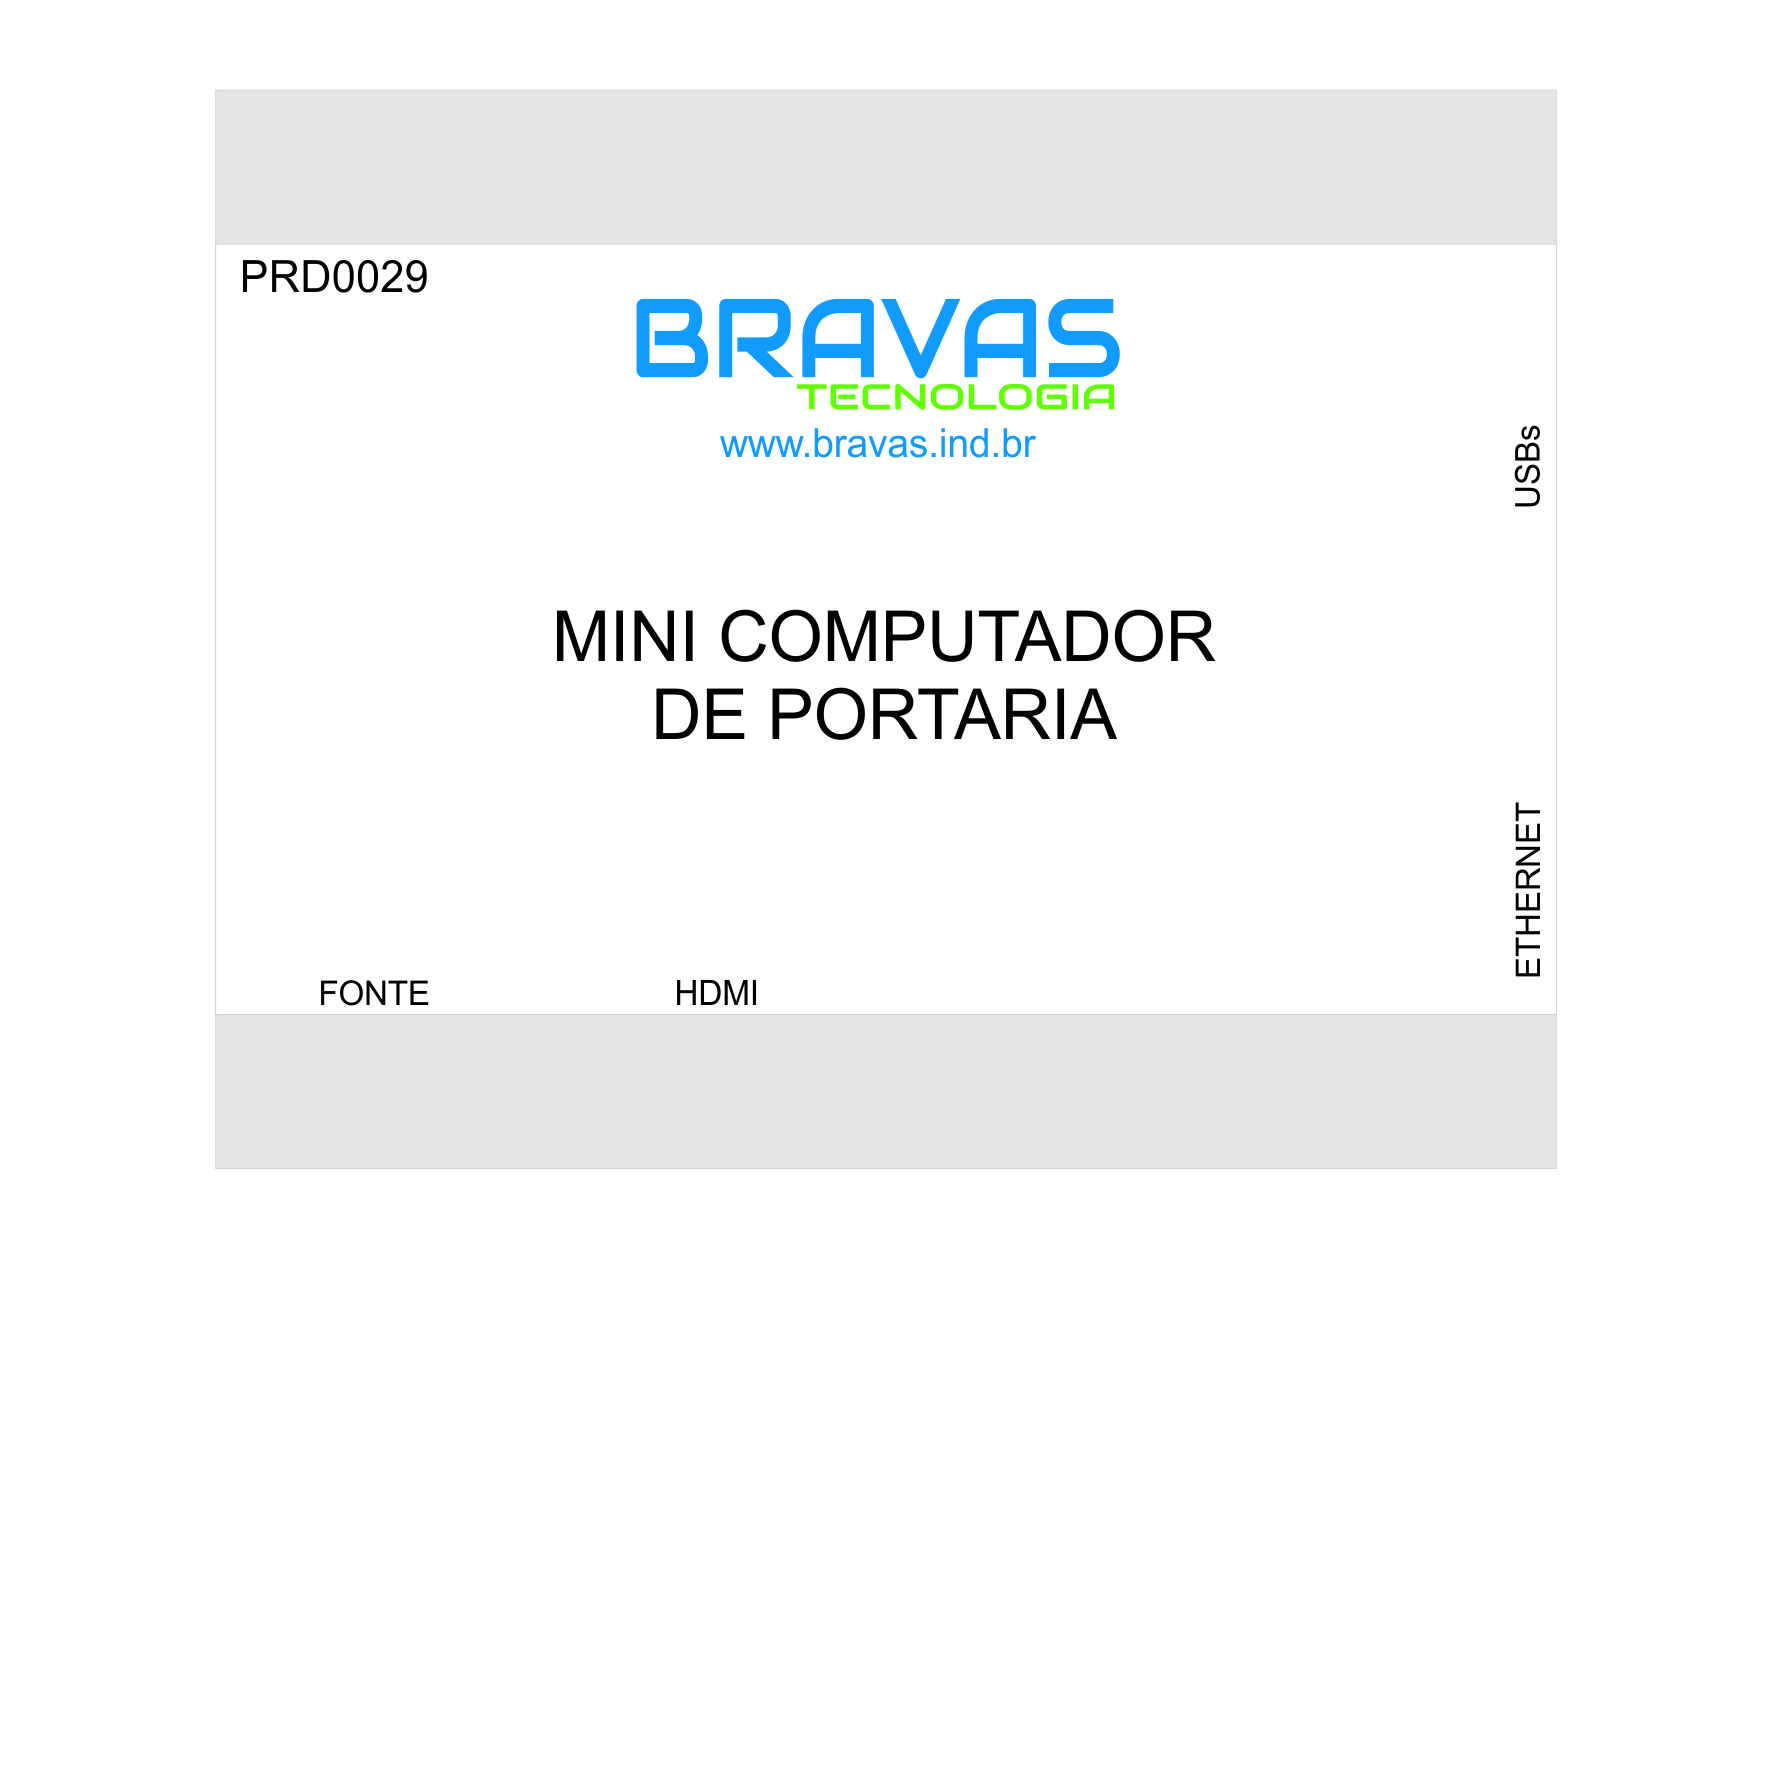 PRD0029 - Mini Computador de Portaria